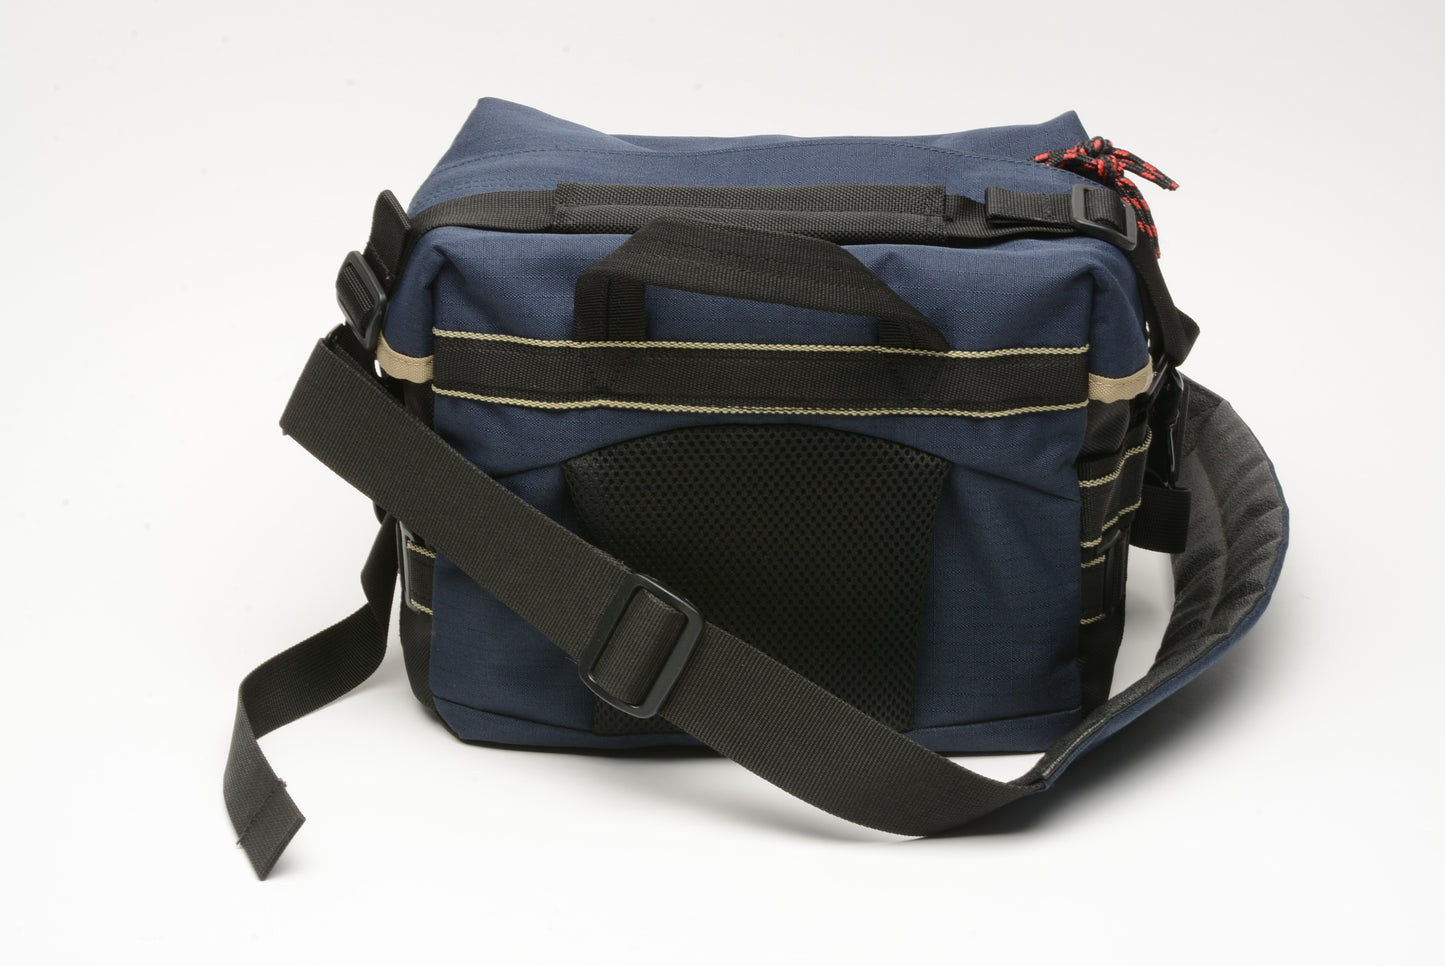 Promaster camera shoulder bag, measures ~ 14" x 9 x 7" deep, shoulder + hip strap